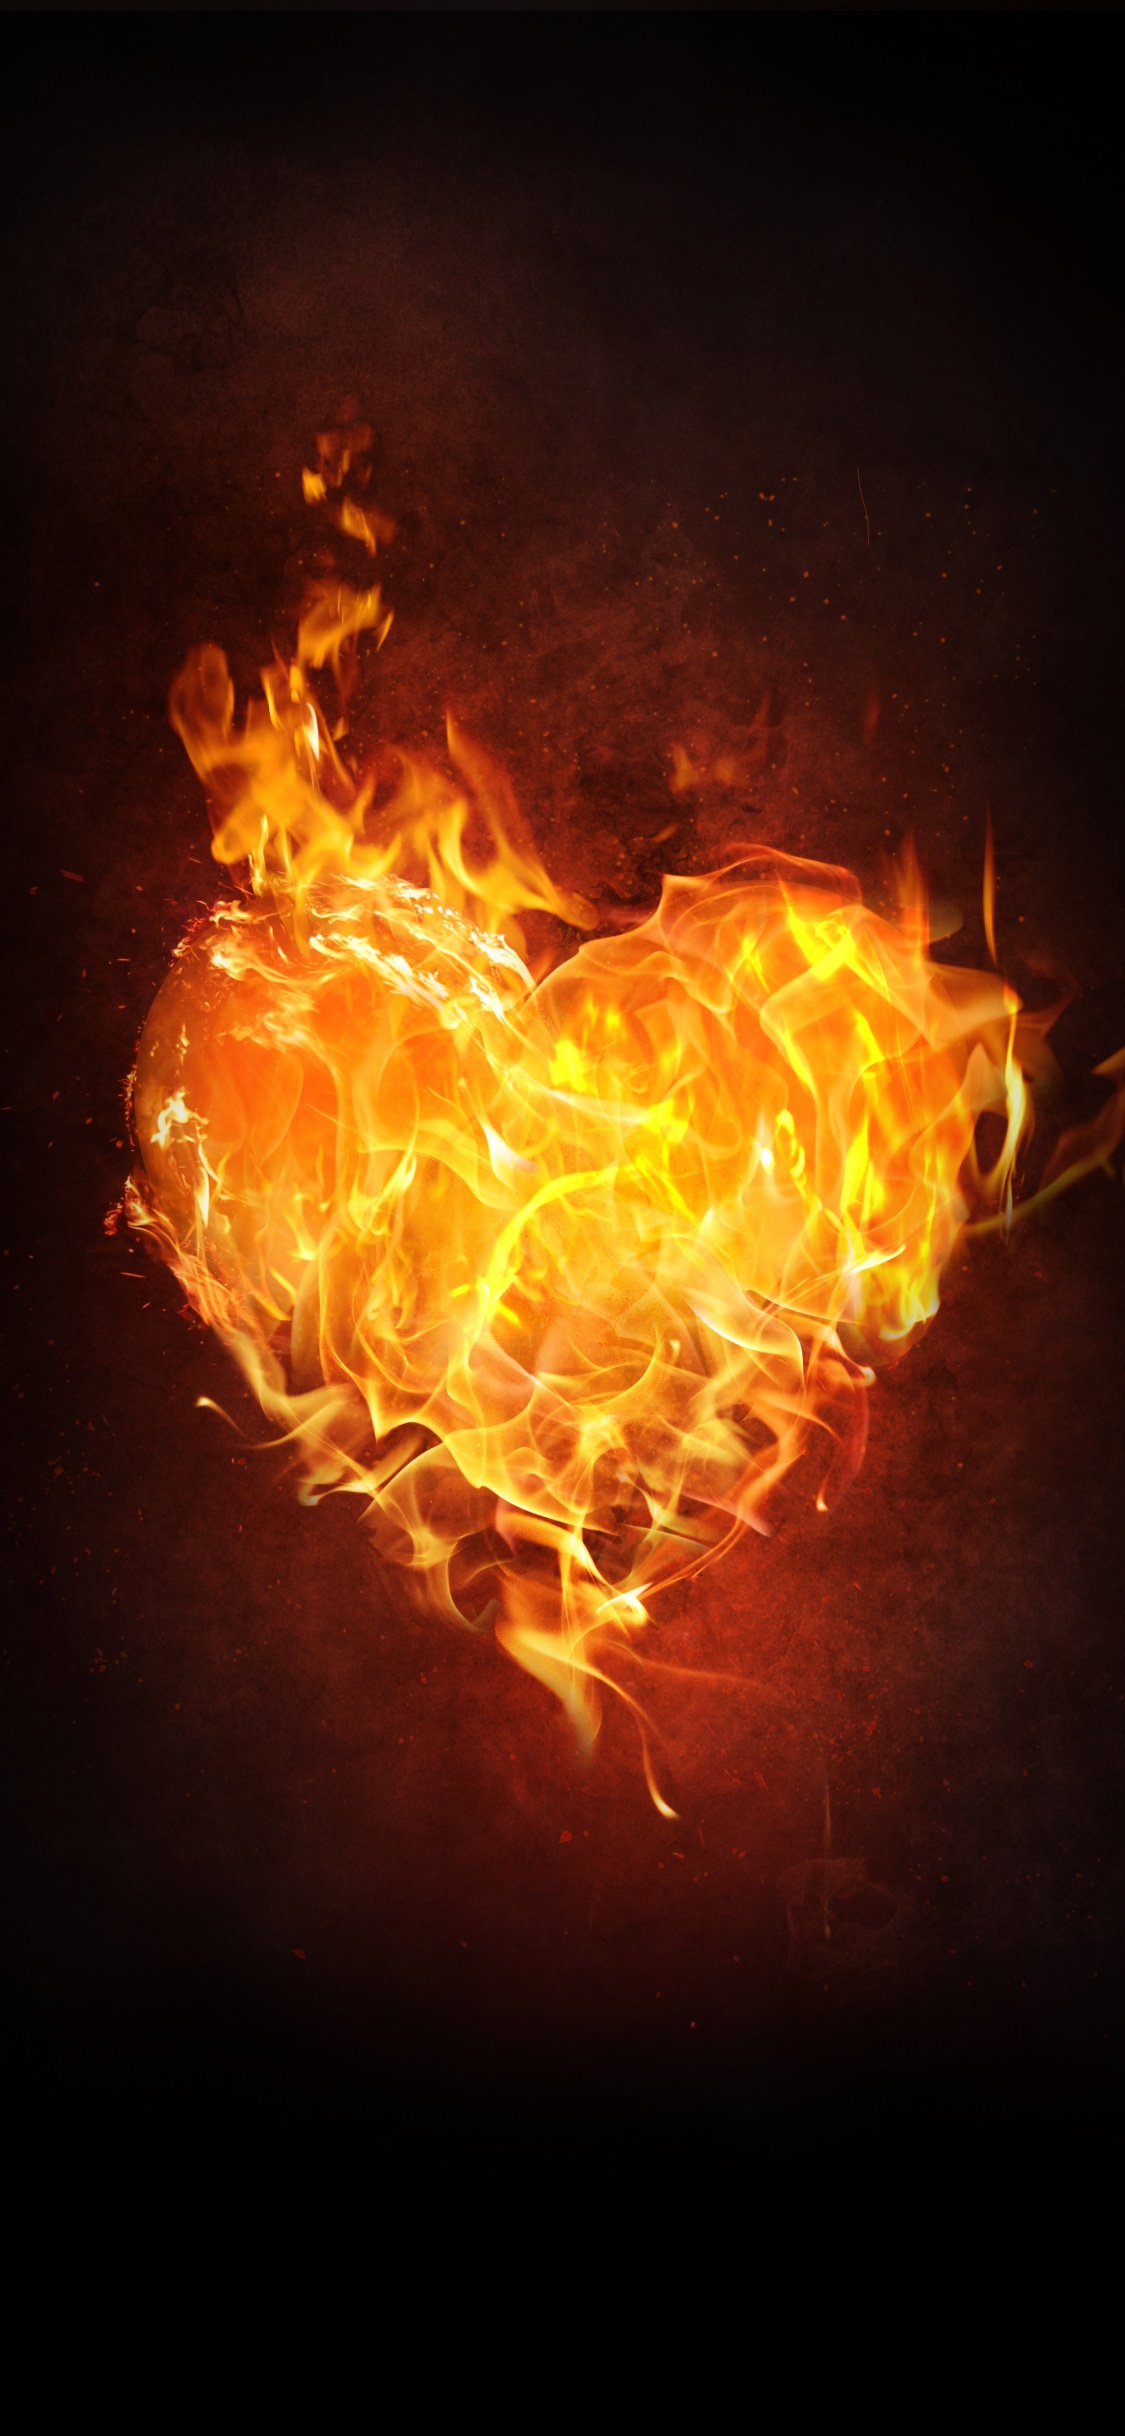 Flame, Fire, Heart, Heat, Orange. Wallpaper in 1125x2436 Resolution